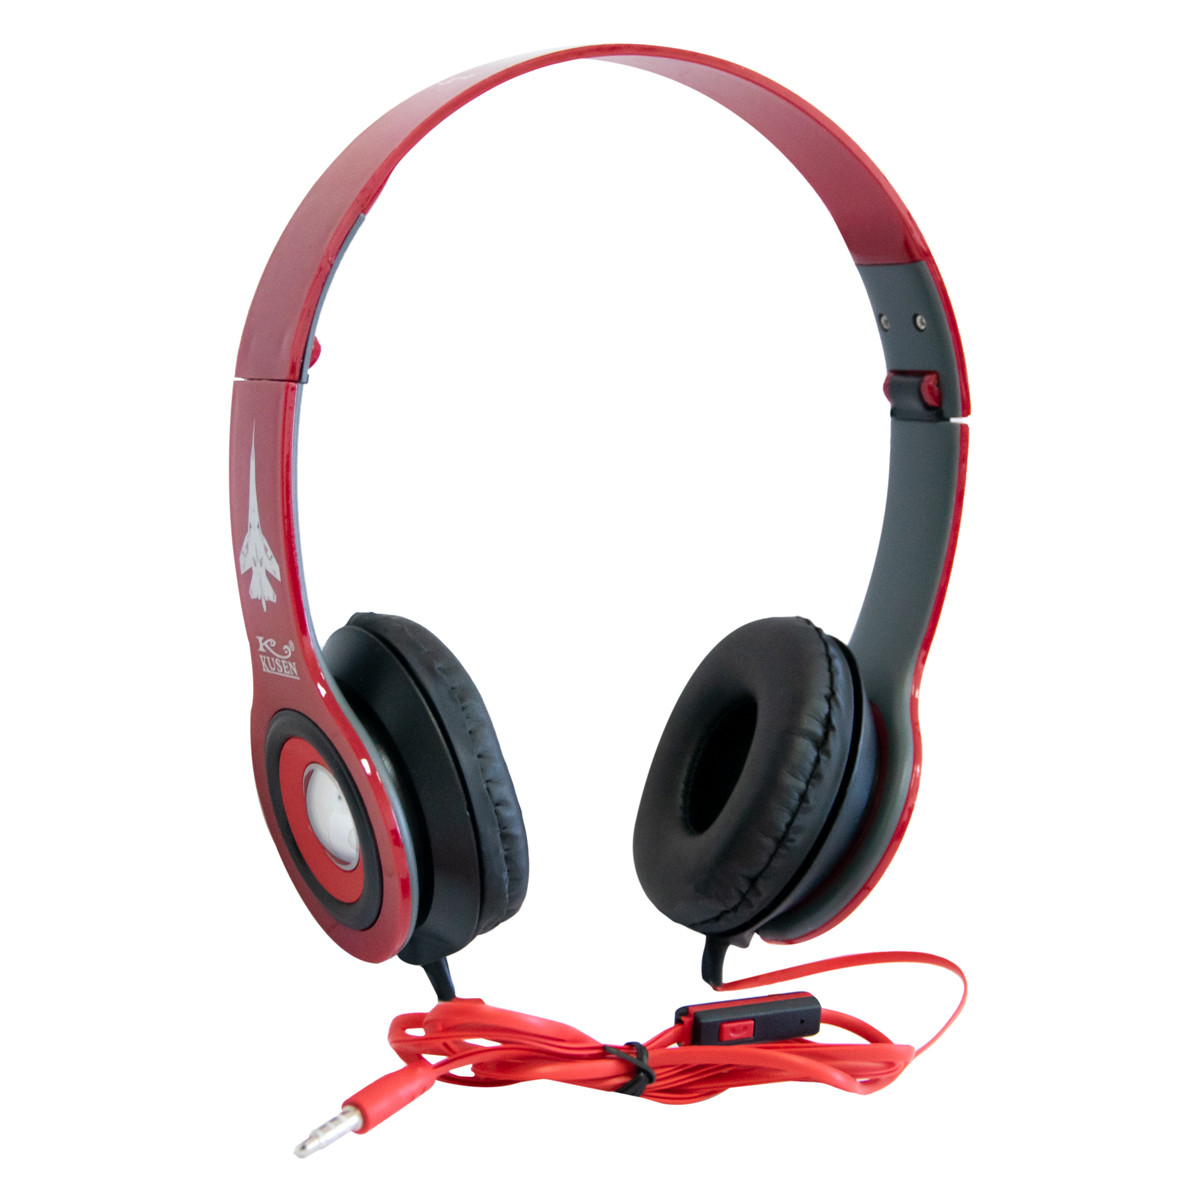 Дротові навушники накладні Kusen KS-611 ExtraBass Червоні, навушники з мікрофоном (проводные наушники)